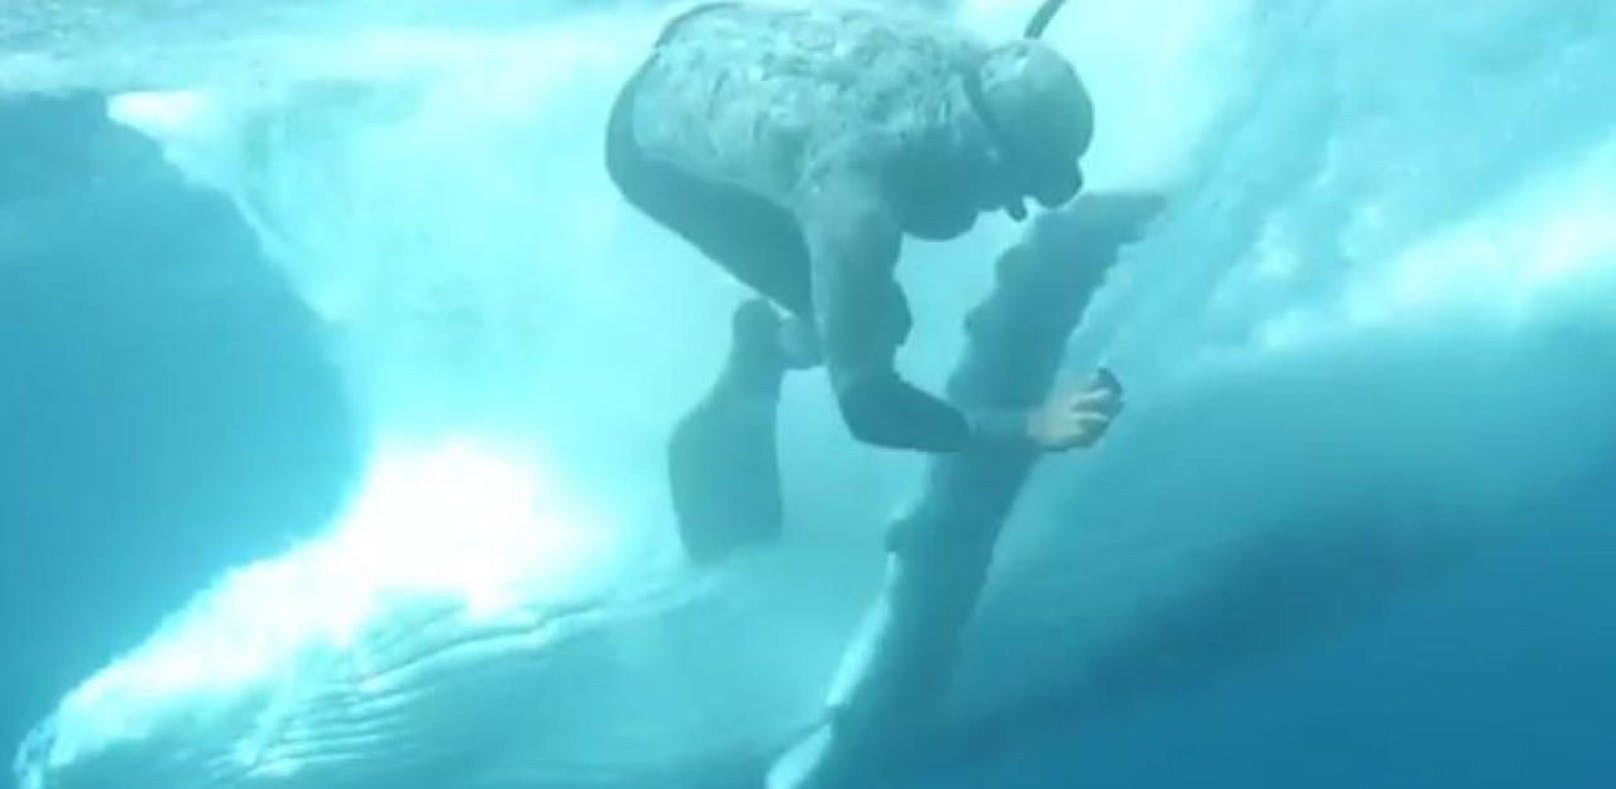 Video: Taucher fast von Buckelwal erdrückt